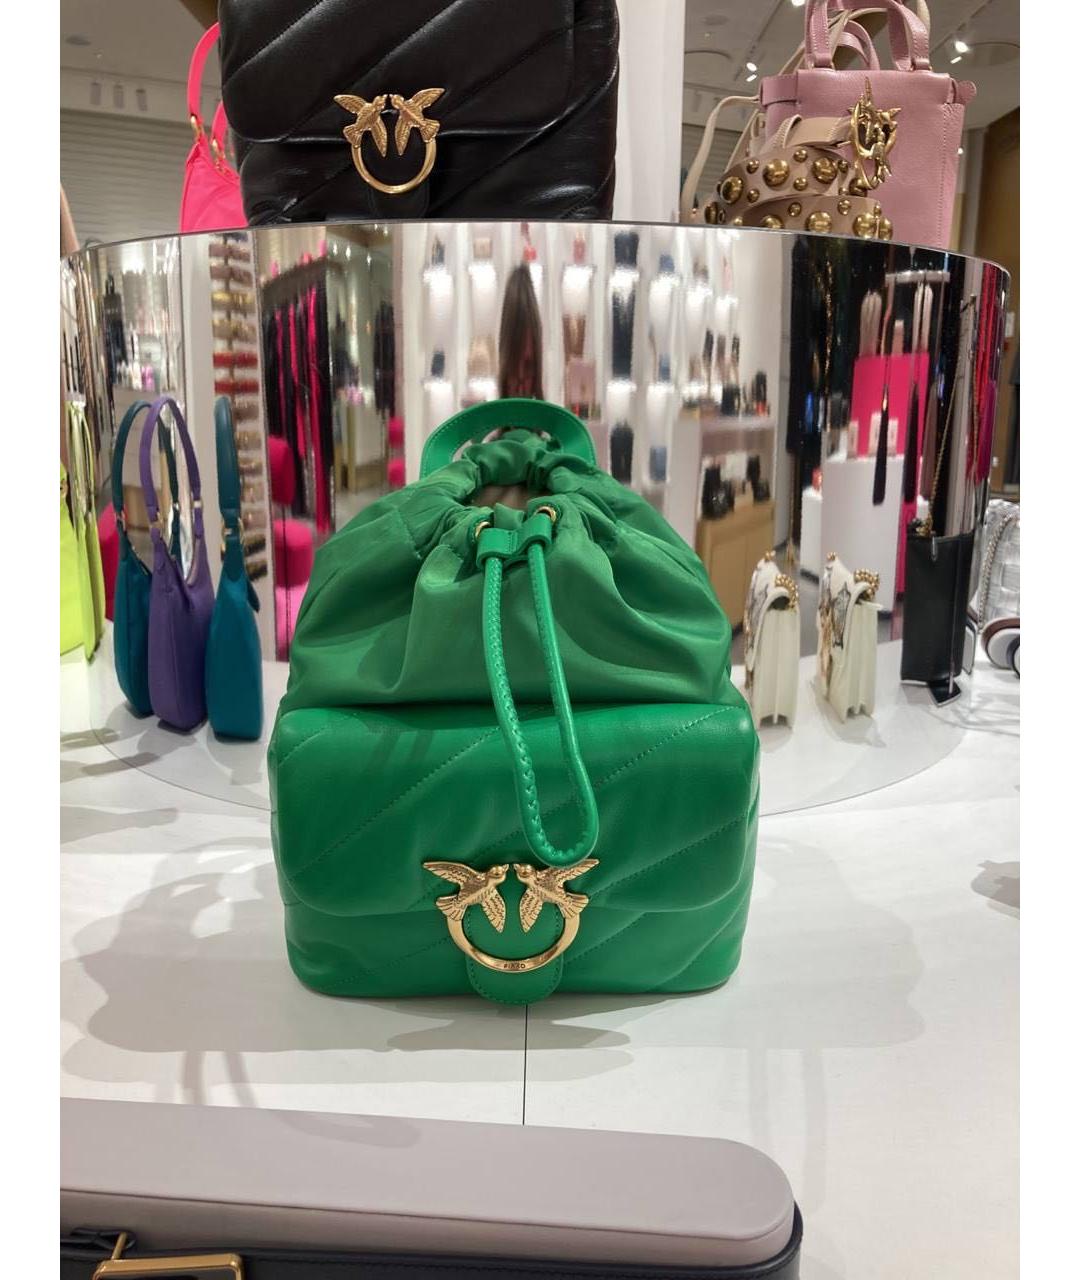 PINKO Зеленый кожаный рюкзак, фото 9